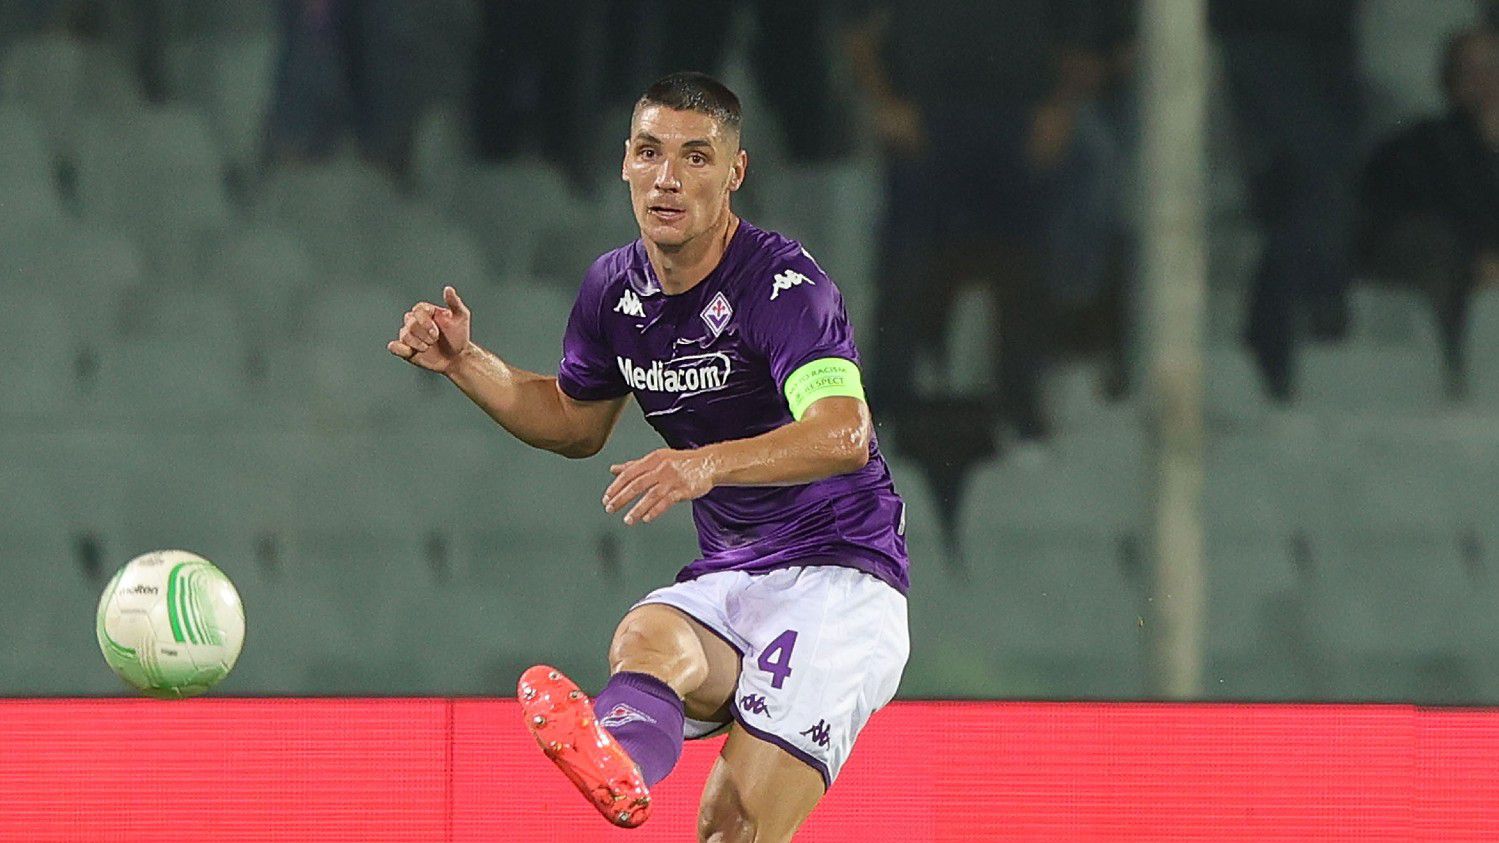 Fiorentina-siker Genovában; sorozatban nyolcadszor vesztett a Hellas Verona